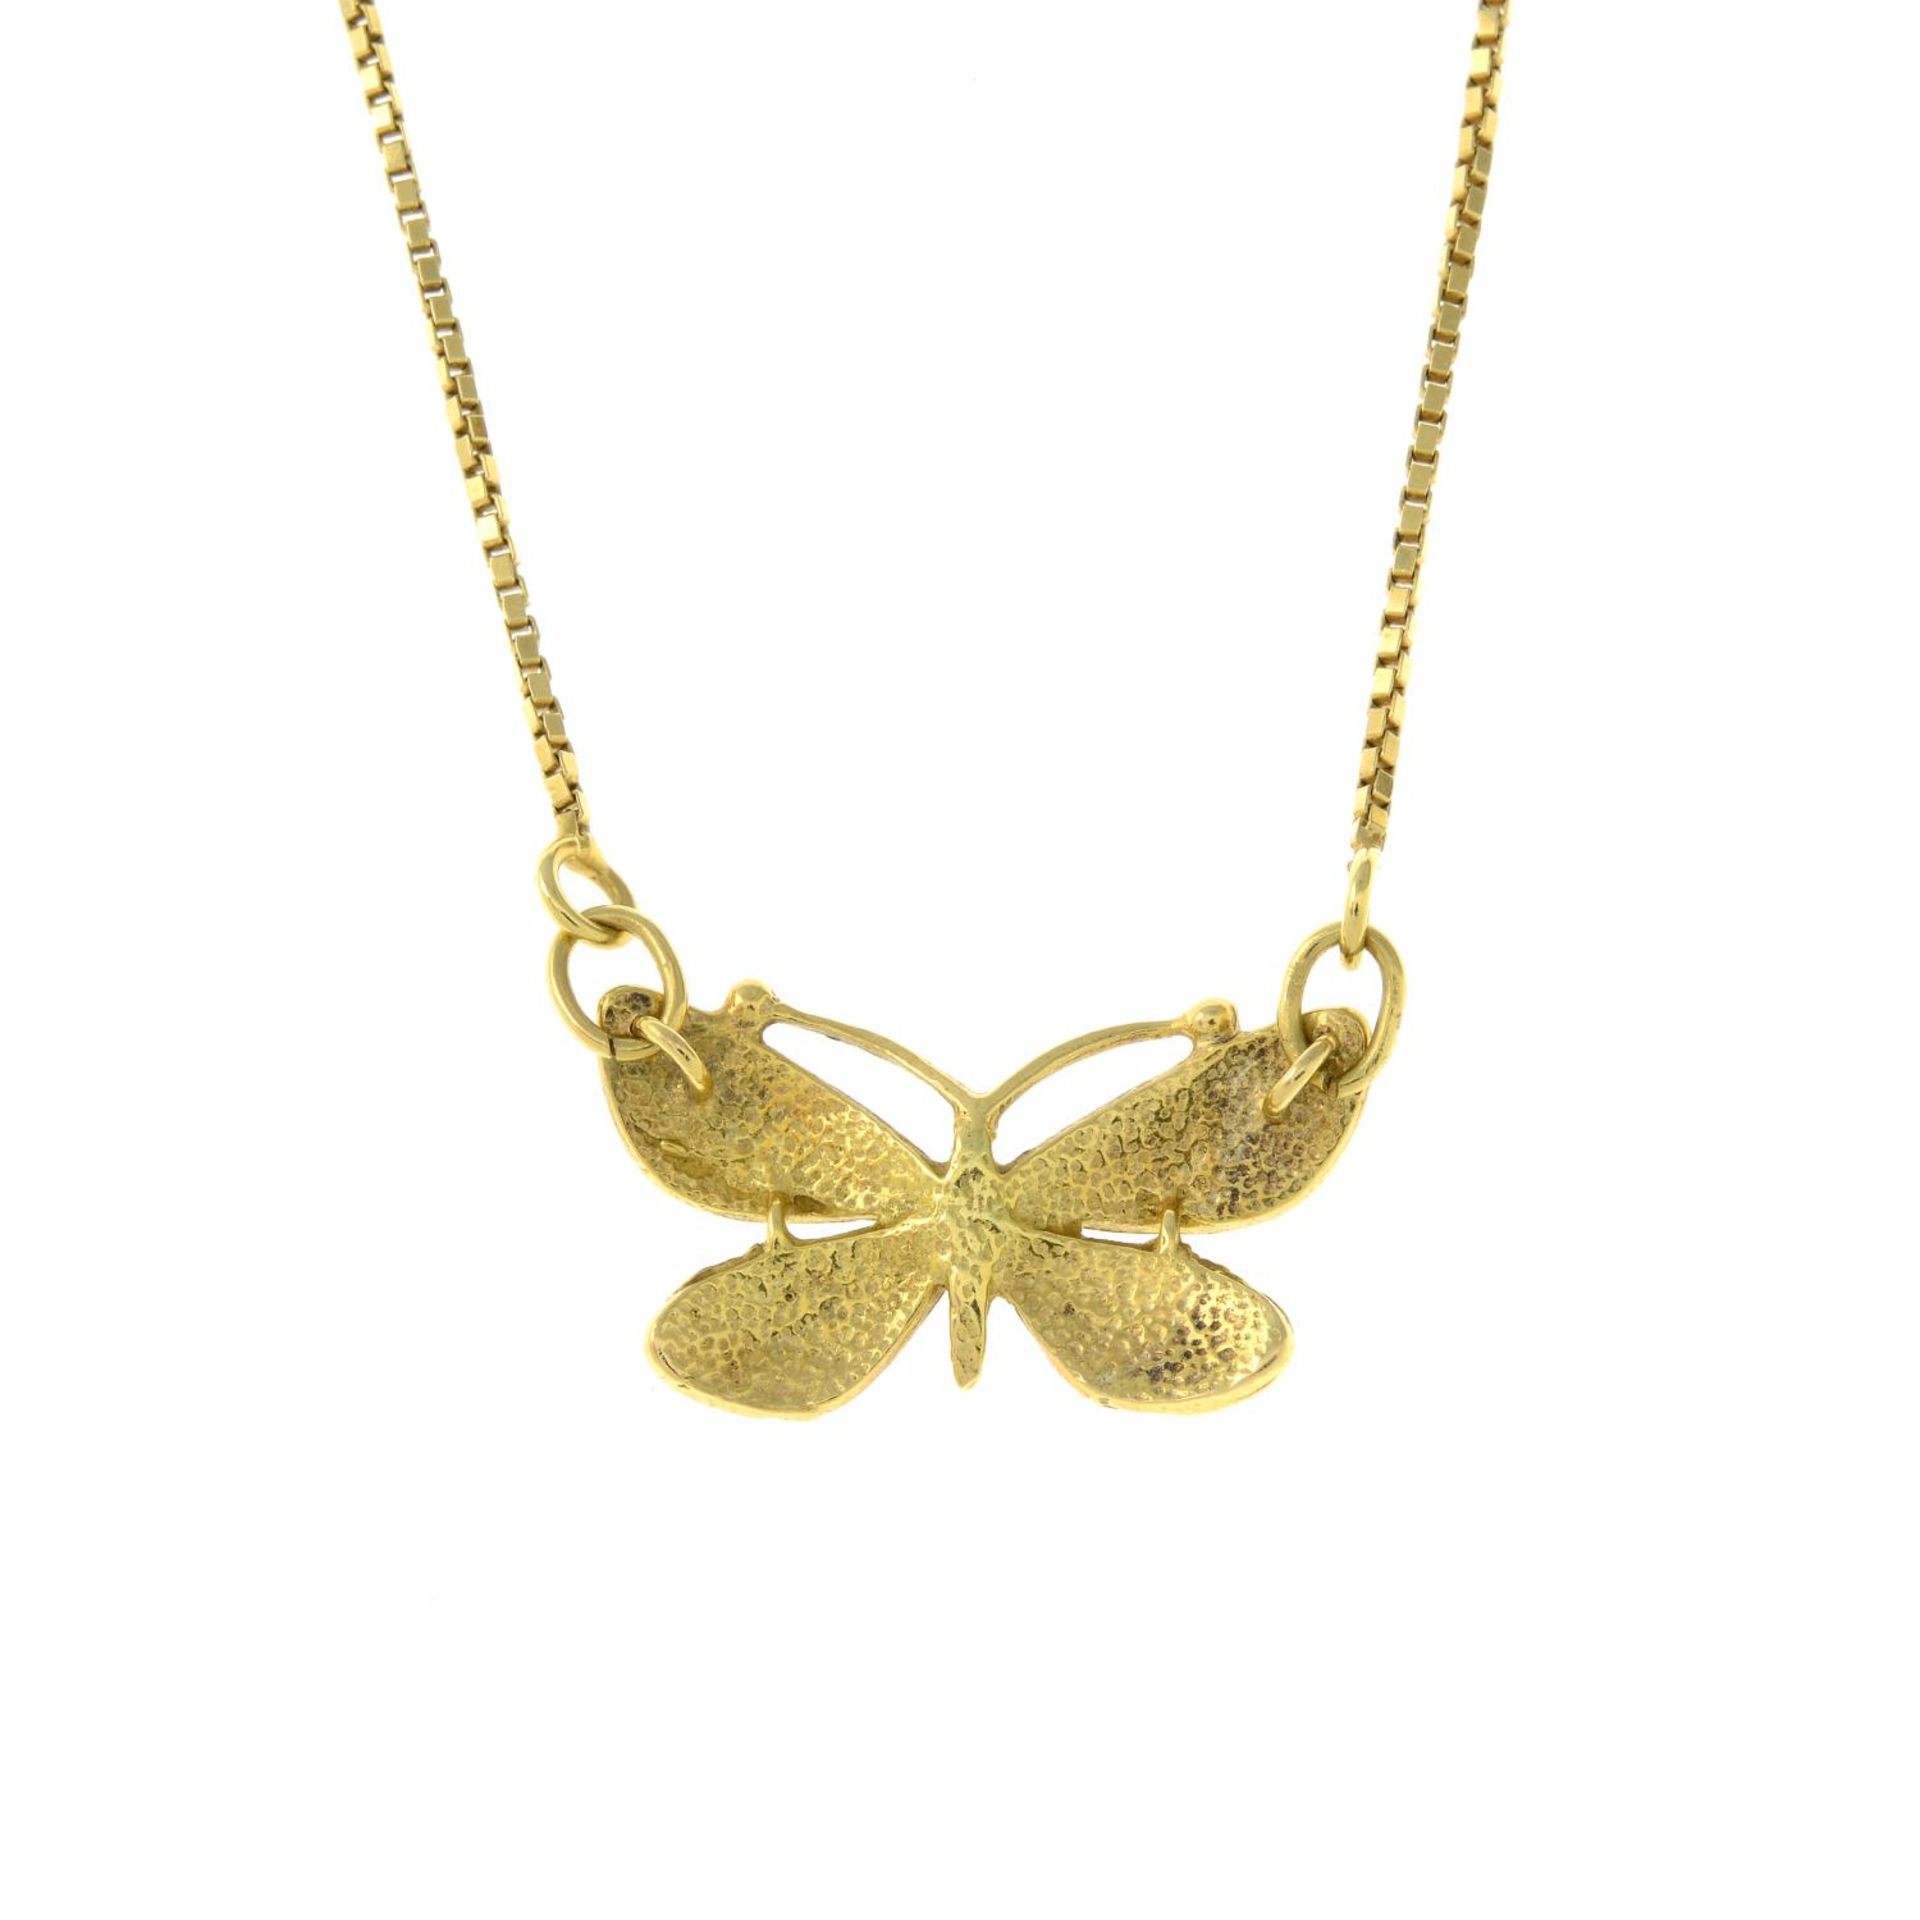 An enamel butterfly pendant, - Image 2 of 3